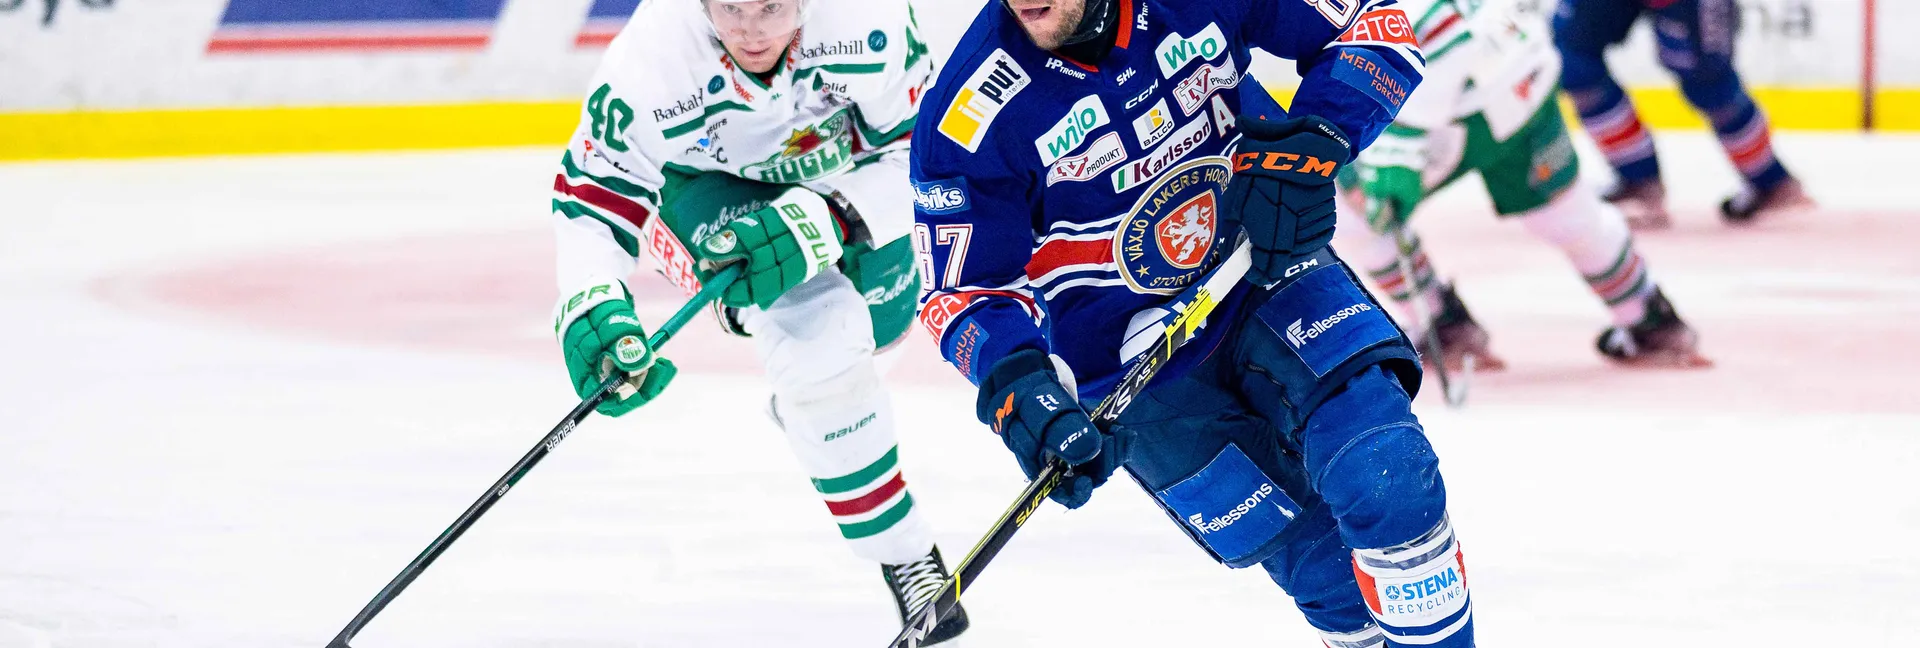 Ishockeymatch mellan Rögle och Växjö i SHL